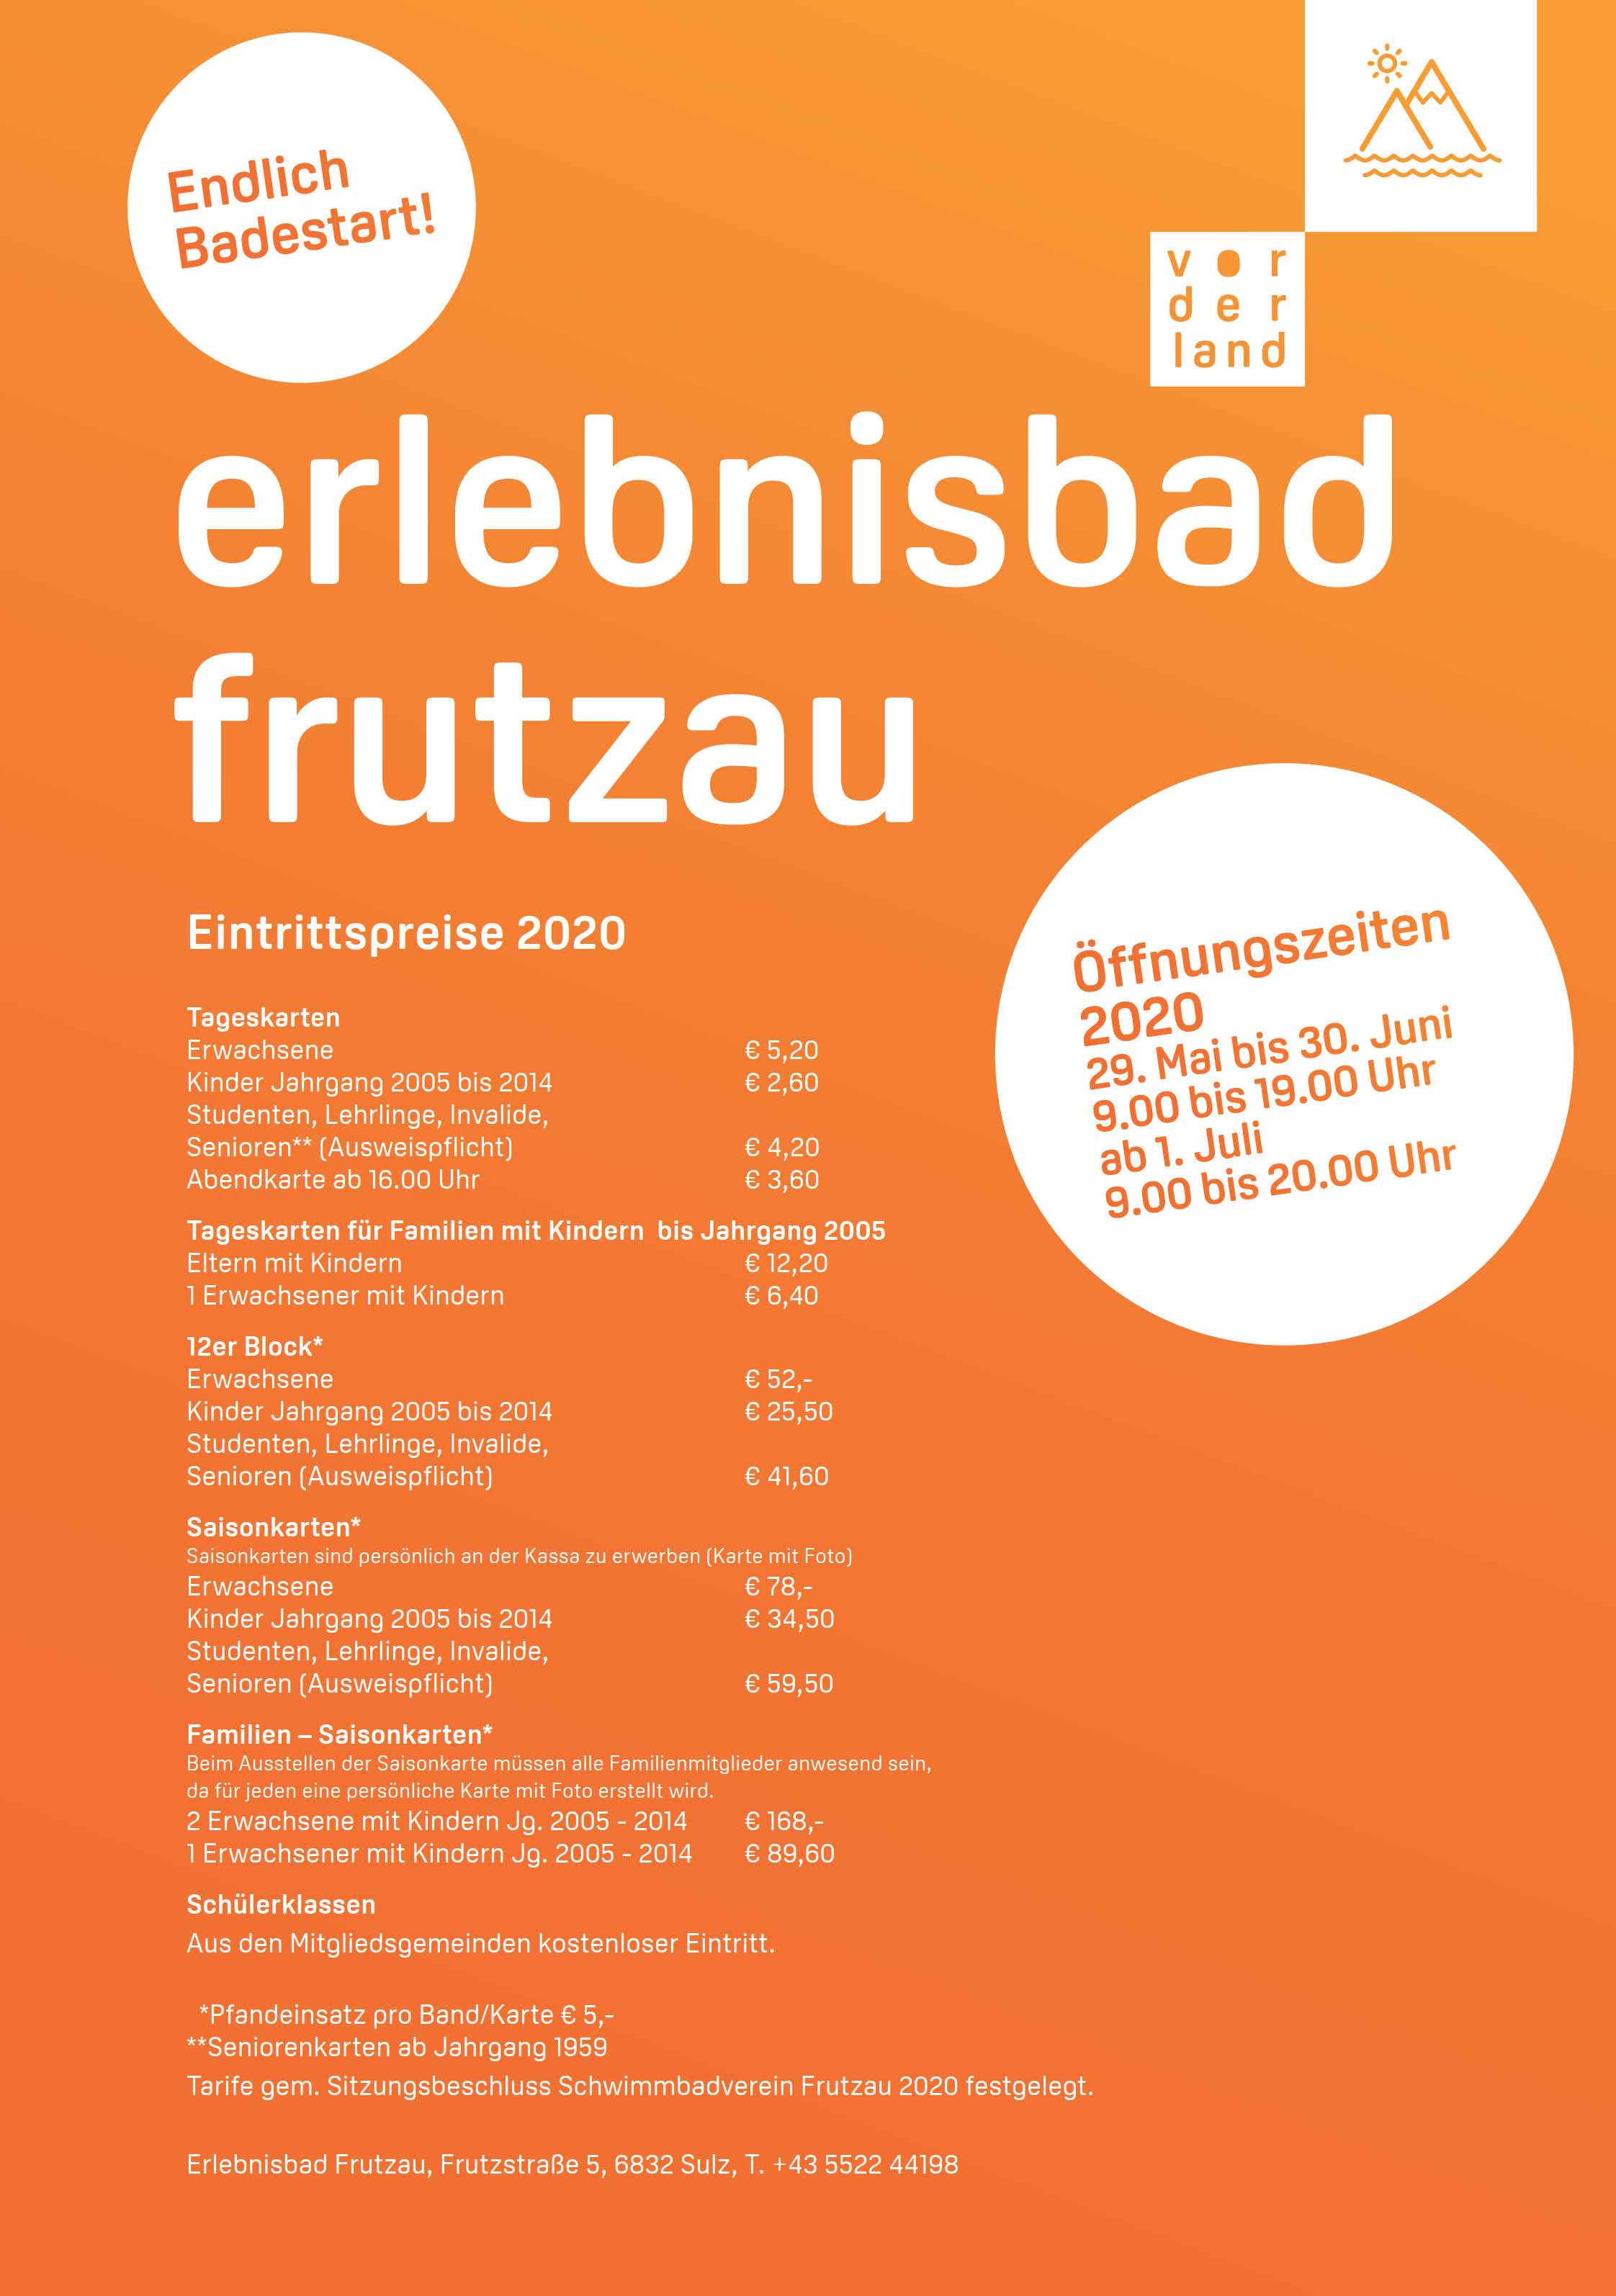 Tarife und Öffnungszeiten Bad Frutzau 2020_1.jpg